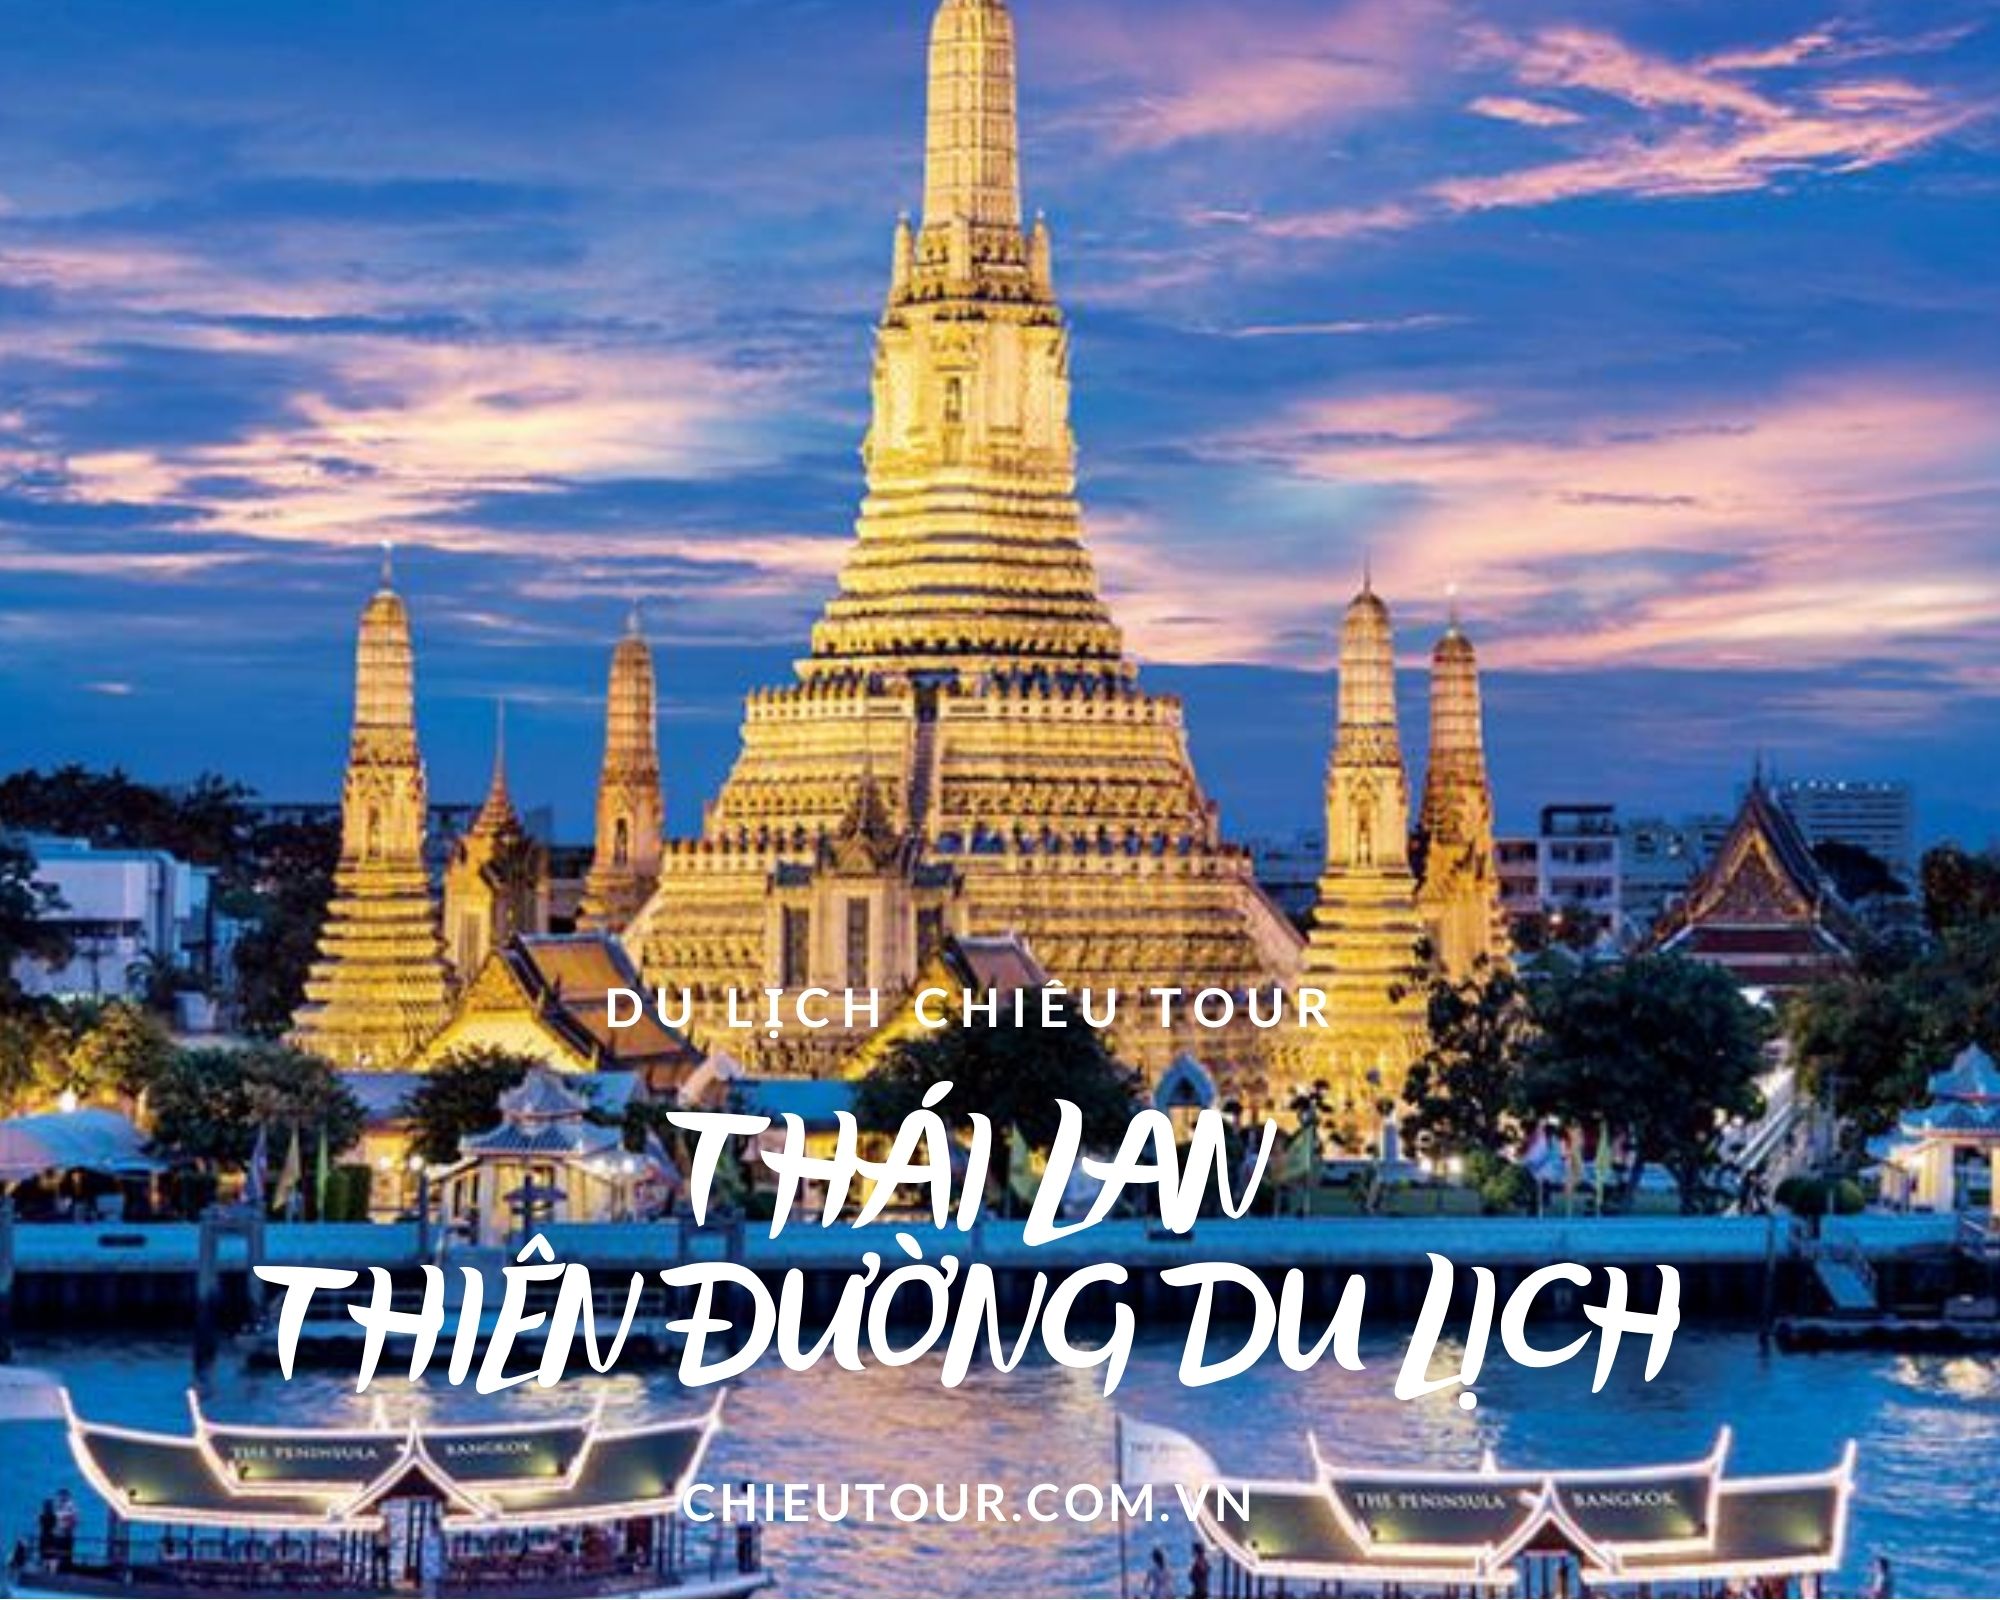 Tour du lịch Thái Lan 4 ngày 3 đêm